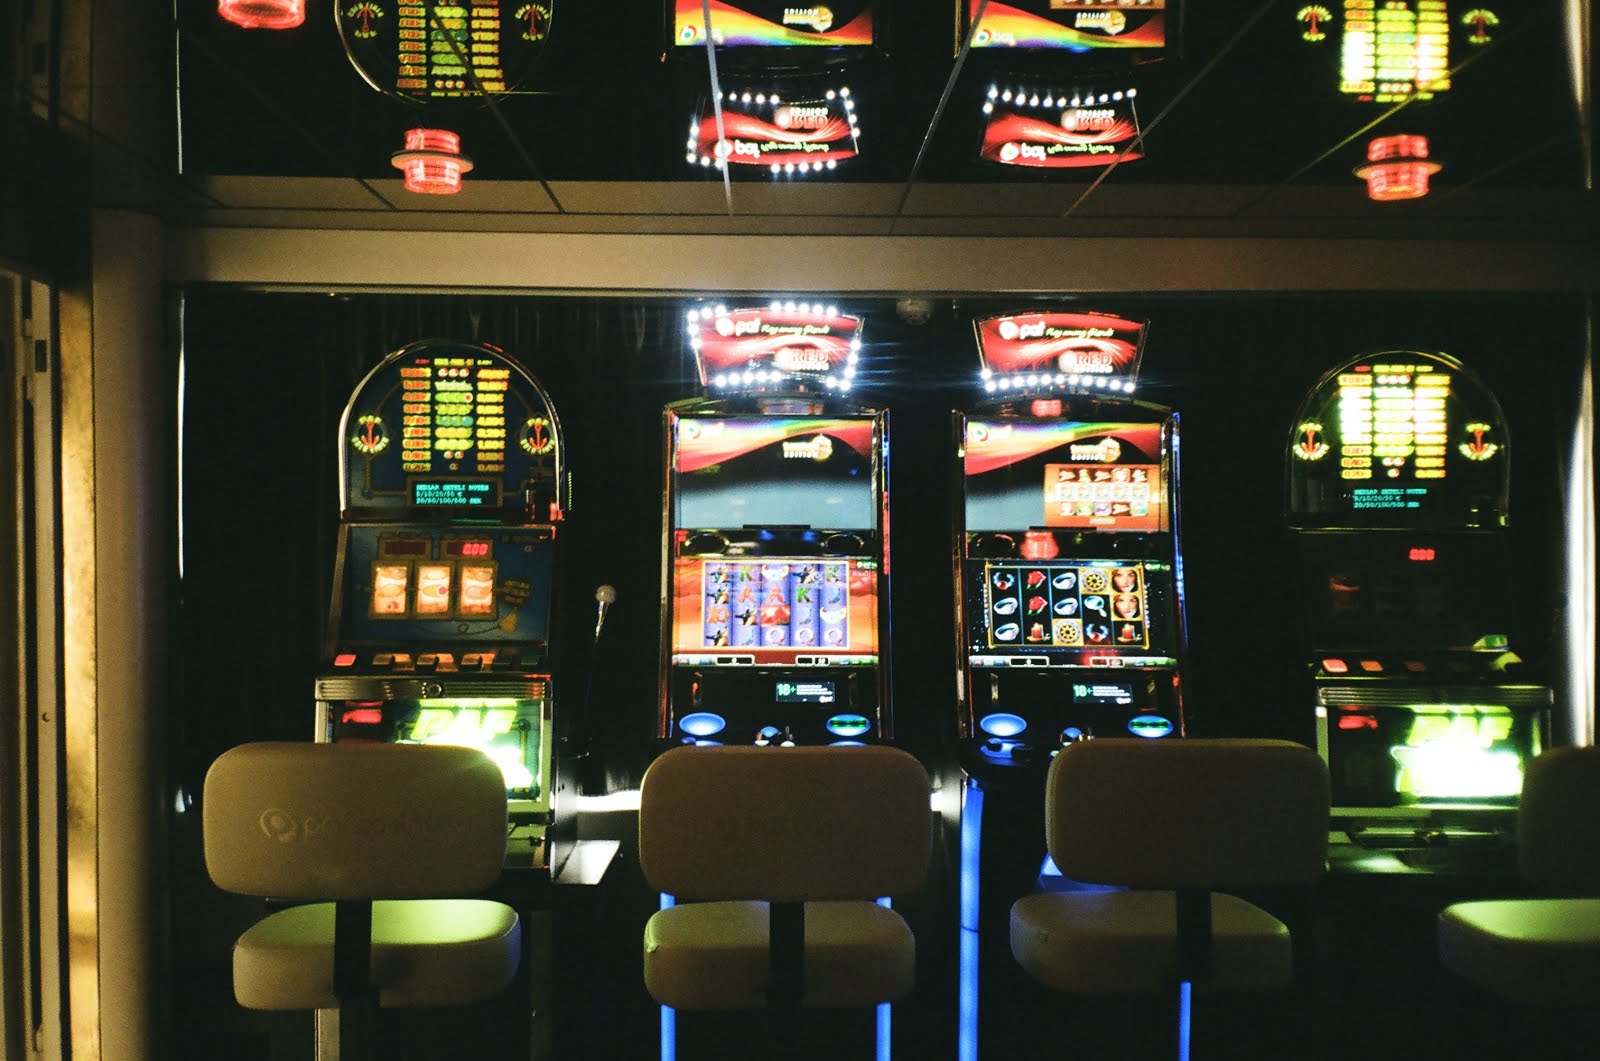 jocurile de noroc provoaca anxietatea